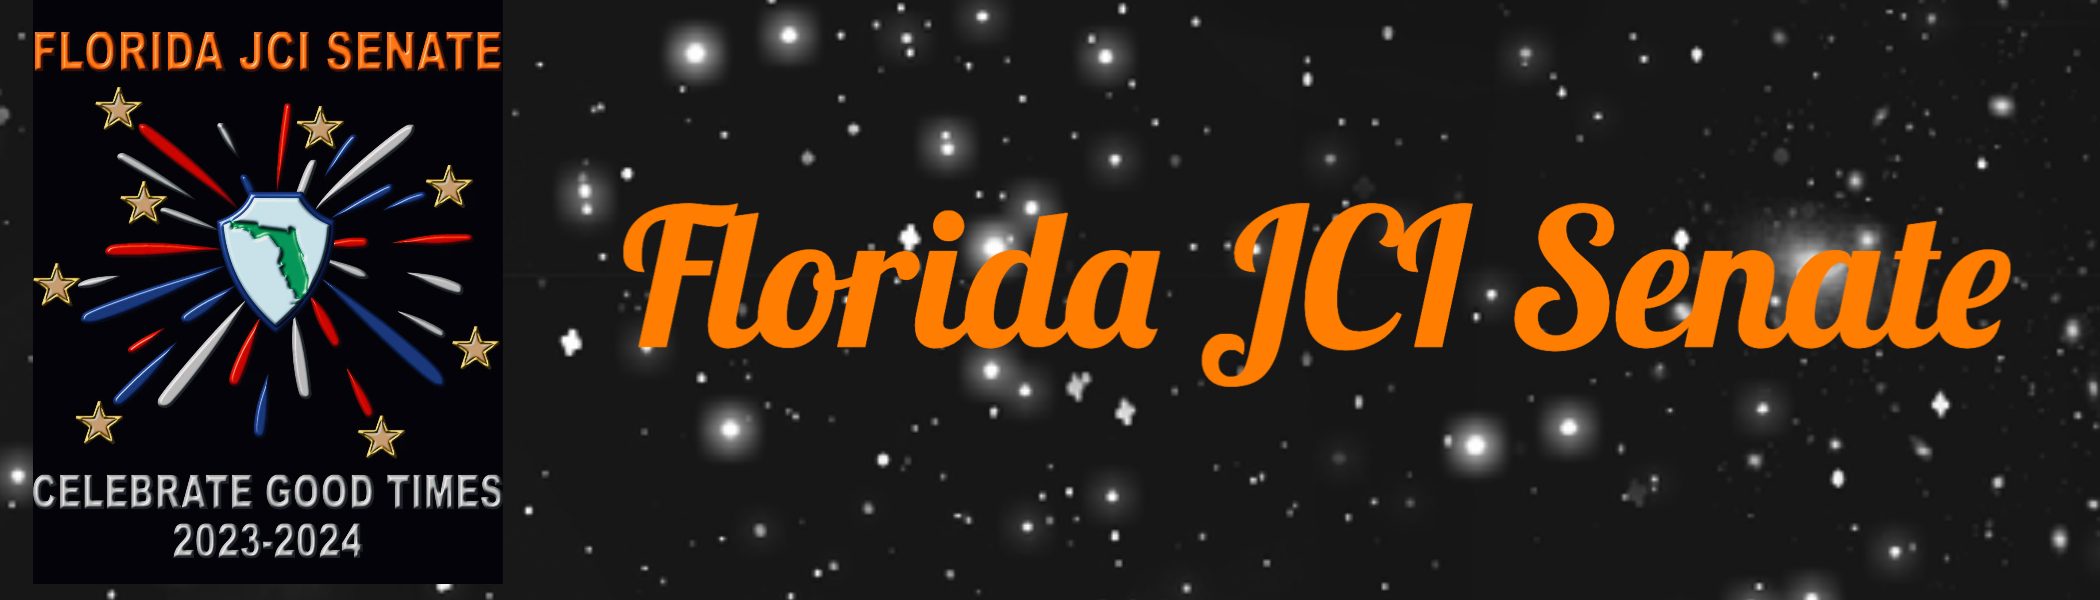 Florida JCI Senate